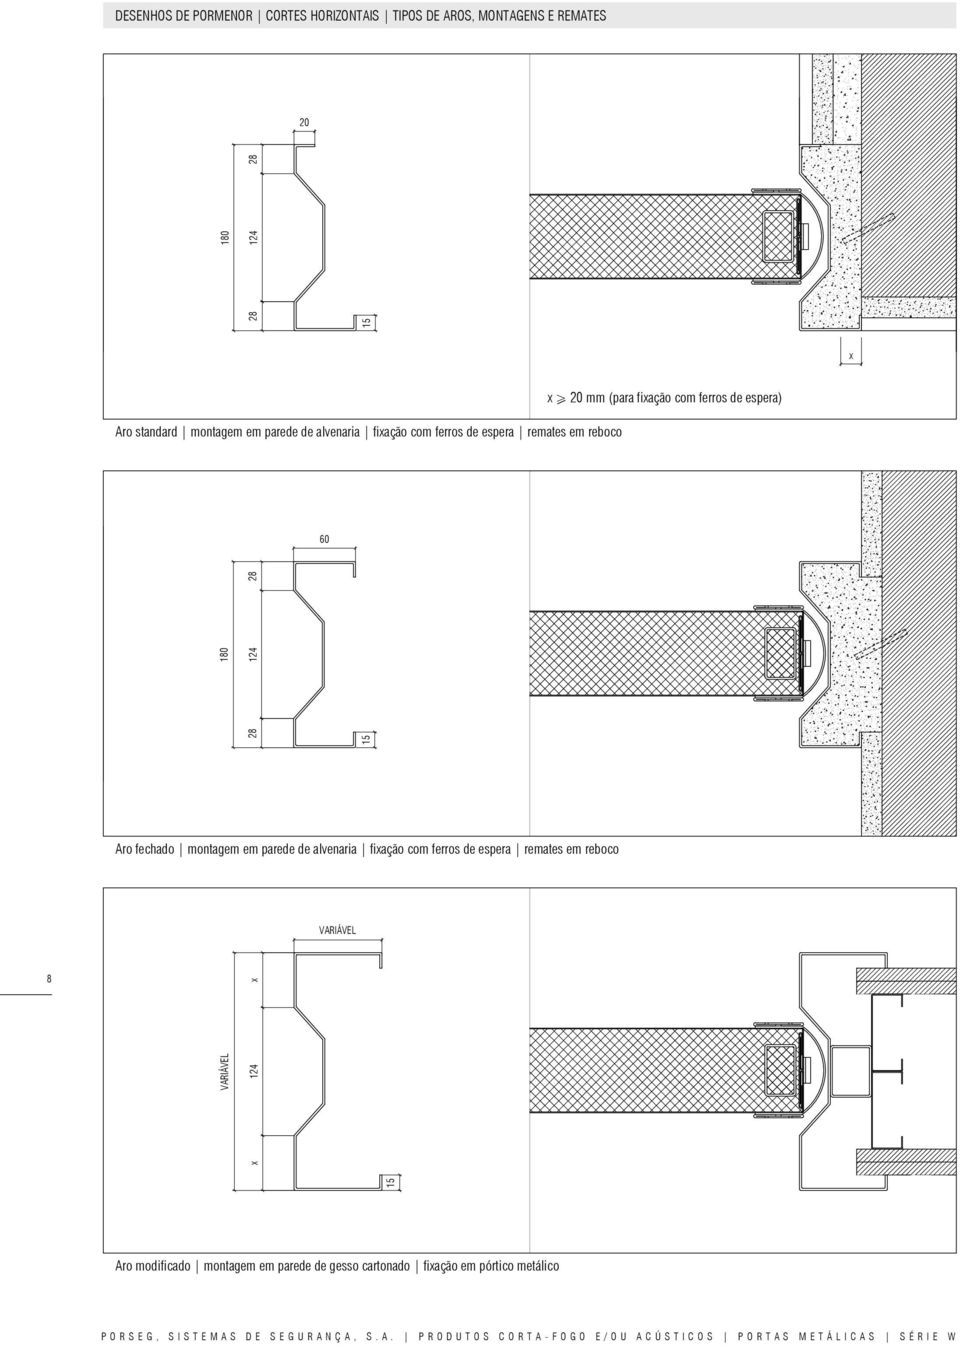 de alvenaria fixação com ferros de espera remates em reboco VARIÁVEL 8 124 x Aro modificado montagem em parede de gesso cartonado fixação em pórtico